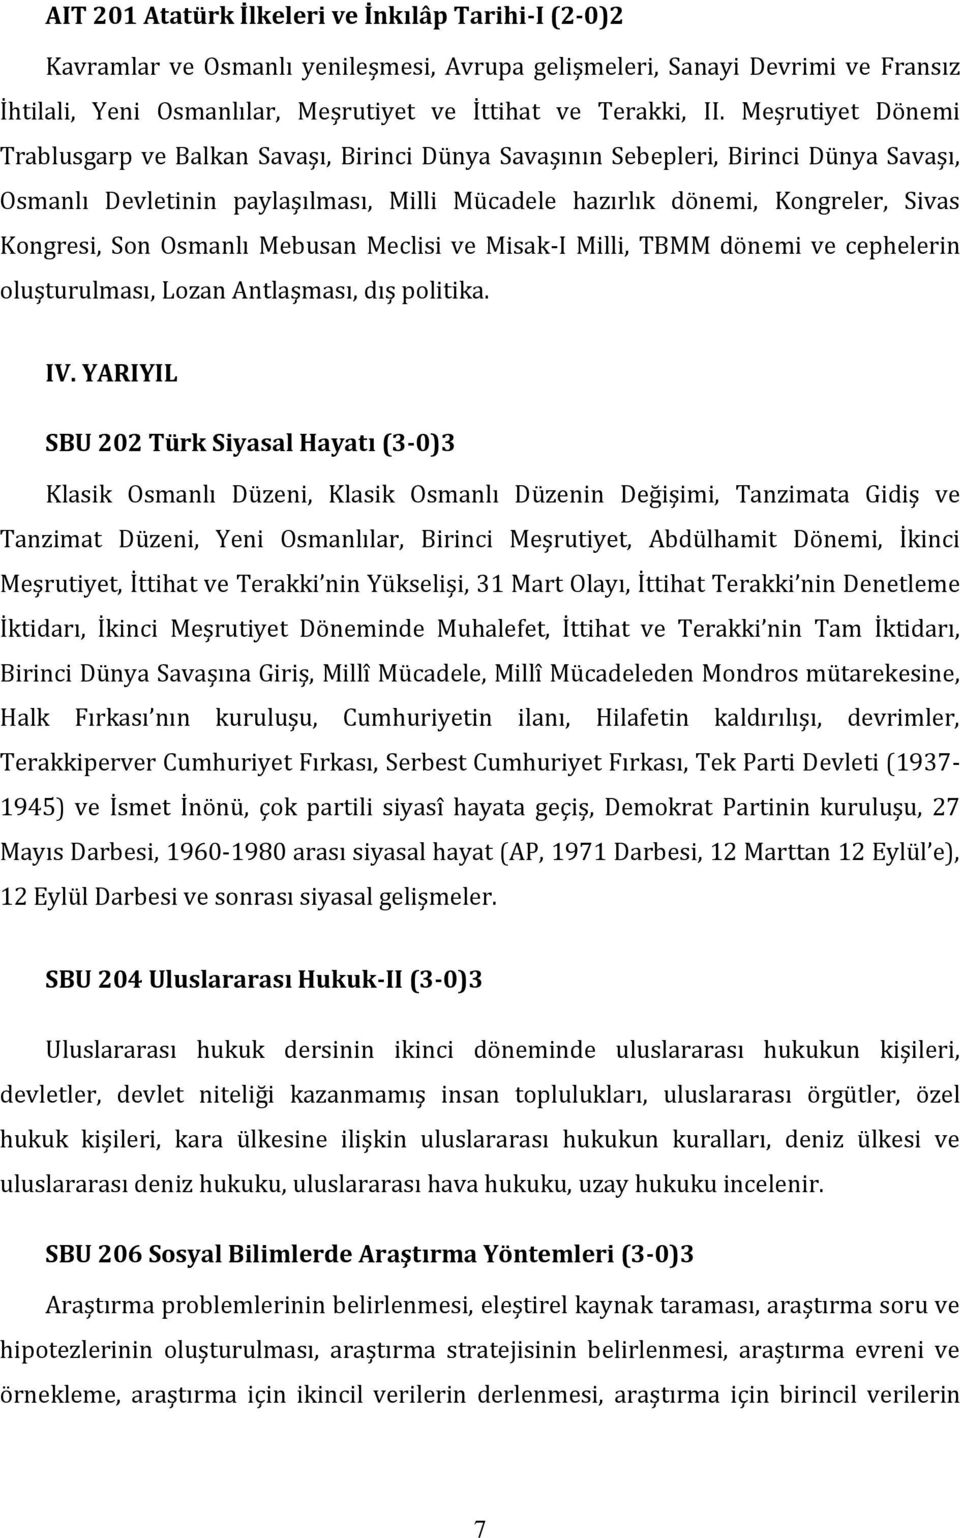 Son Osmanlı Mebusan Meclisi ve Misak-I Milli, TBMM dönemi ve cephelerin oluşturulması, Lozan Antlaşması, dış politika. IV.